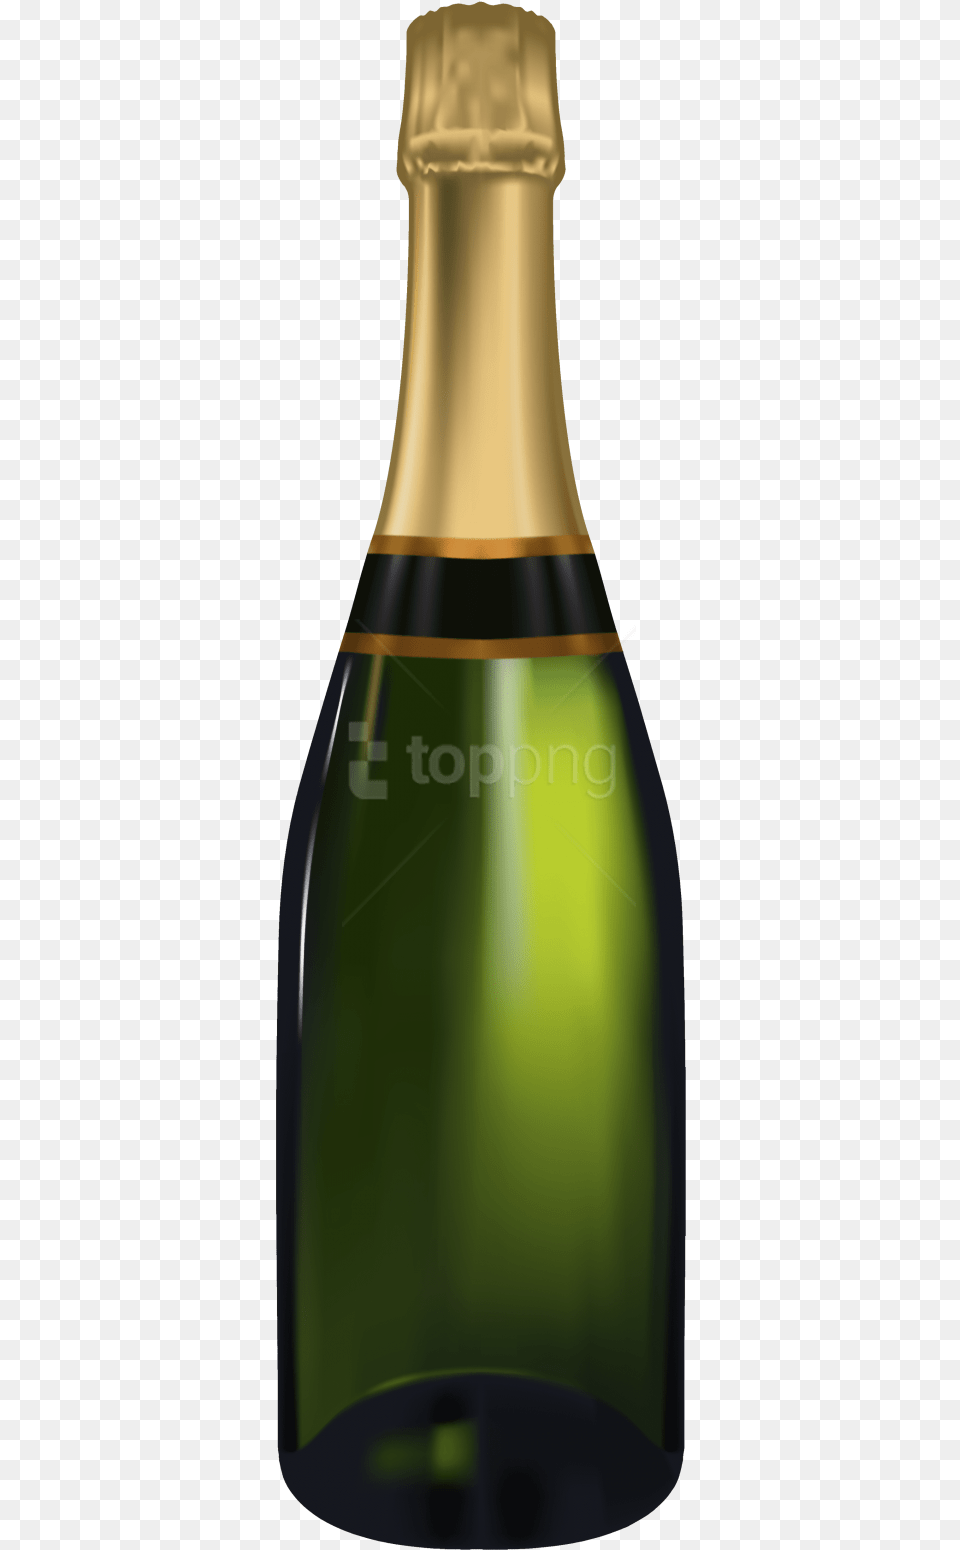 Champagne Bottle Transparent Background, Alcohol, Beverage, Liquor, Wine Png Image